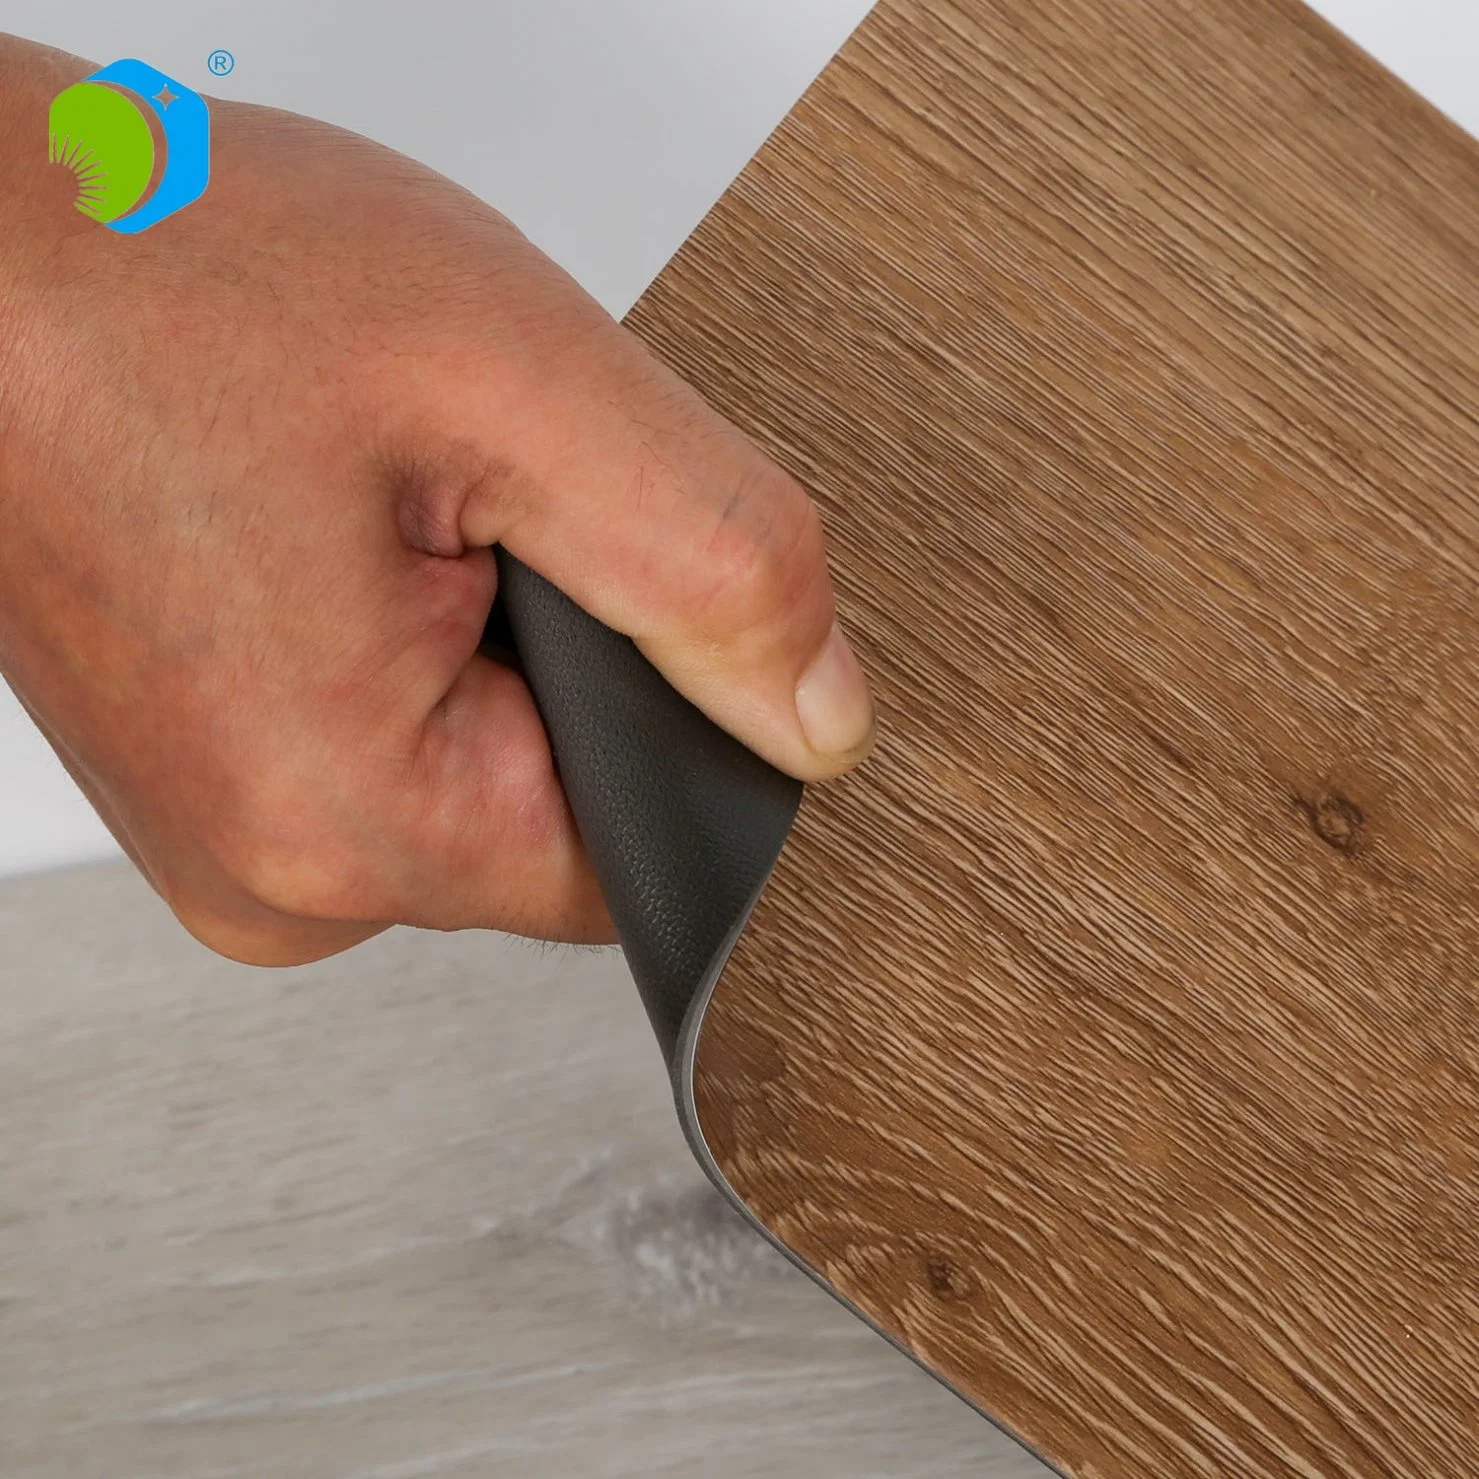 Revêtement de sol en PVC à planches en vinyle avec revêtement UV, épaisseur de 2 mm à 5 mm, résistant à l'eau, avec dos sec. Carreaux antistatiques.